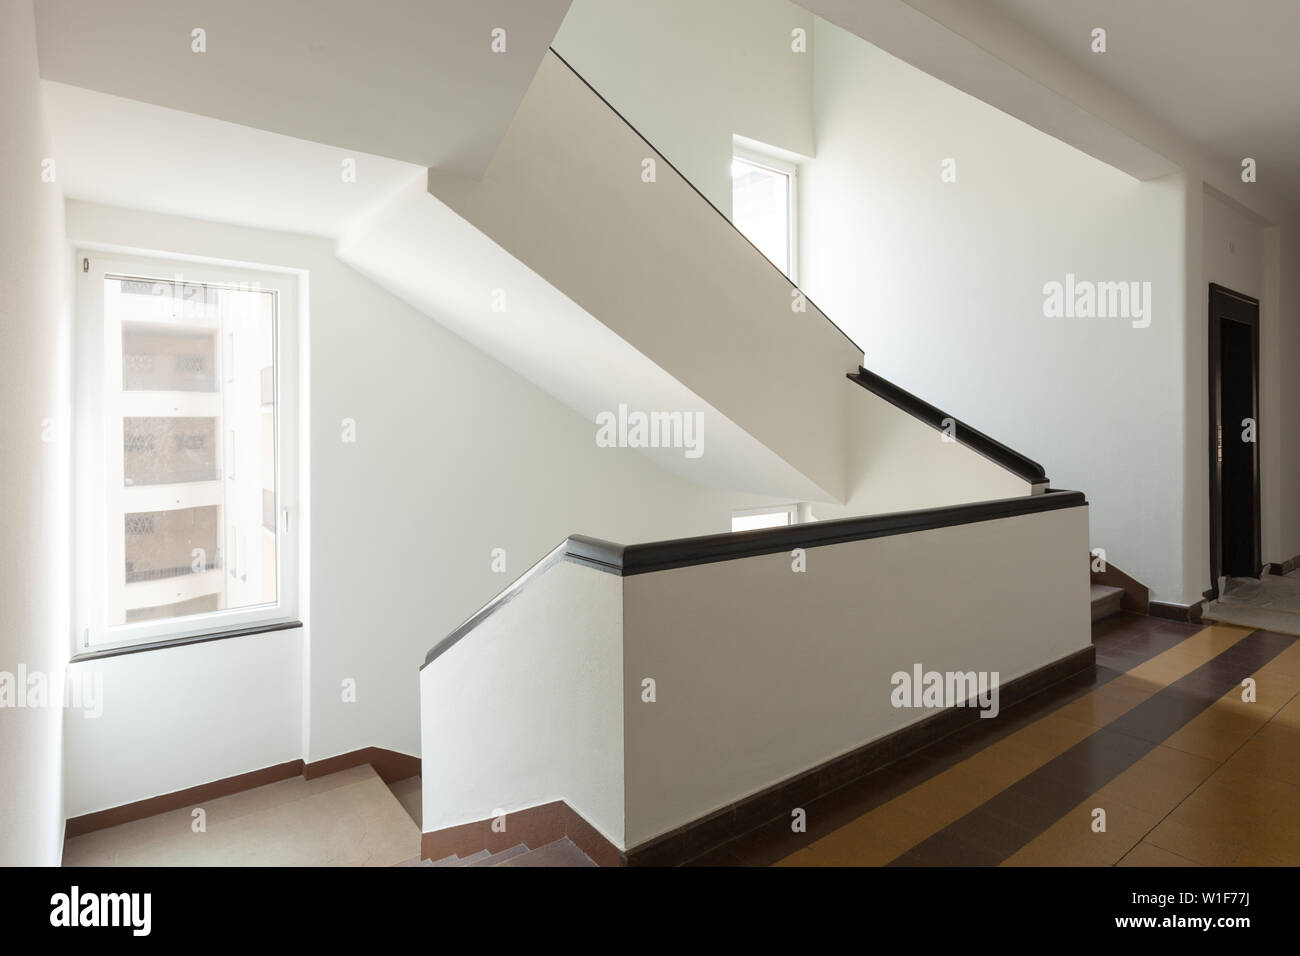 Tromba delle scale immagini e fotografie stock ad alta risoluzione - Alamy